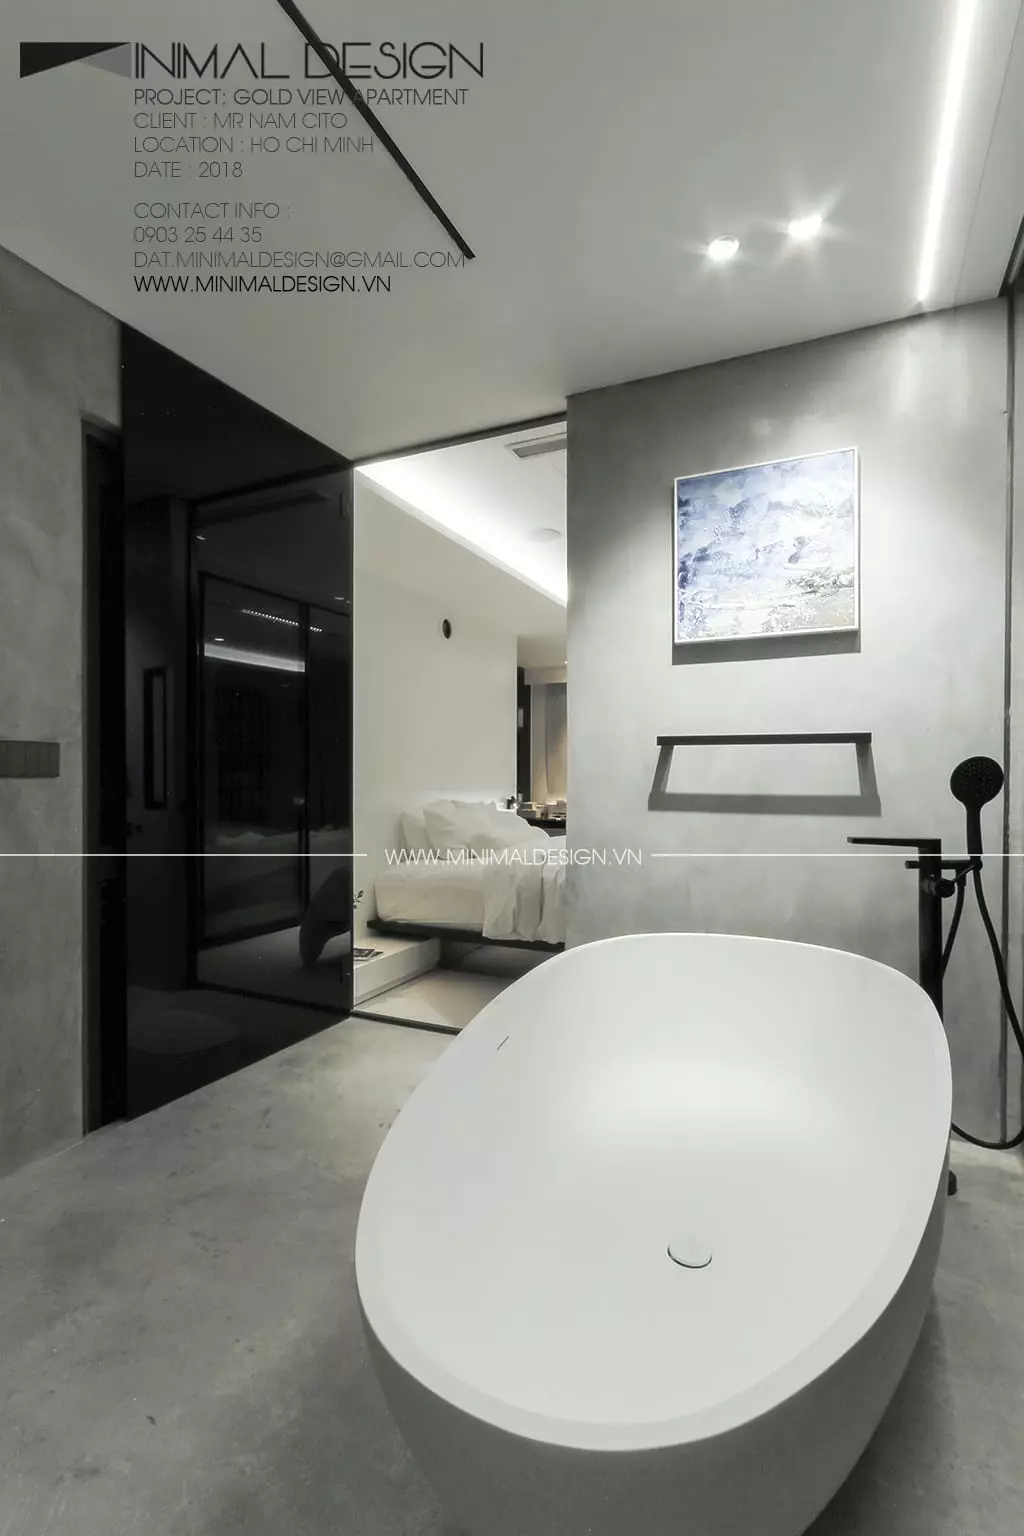 Thiết kế phòng tắm nhỏ tối giản và hiện đại cùng các giải pháp sau sẽ giúp bạn nâng cao chất lượng không gian sống nhưng vẫn đảm bảo thẩm mỹ.